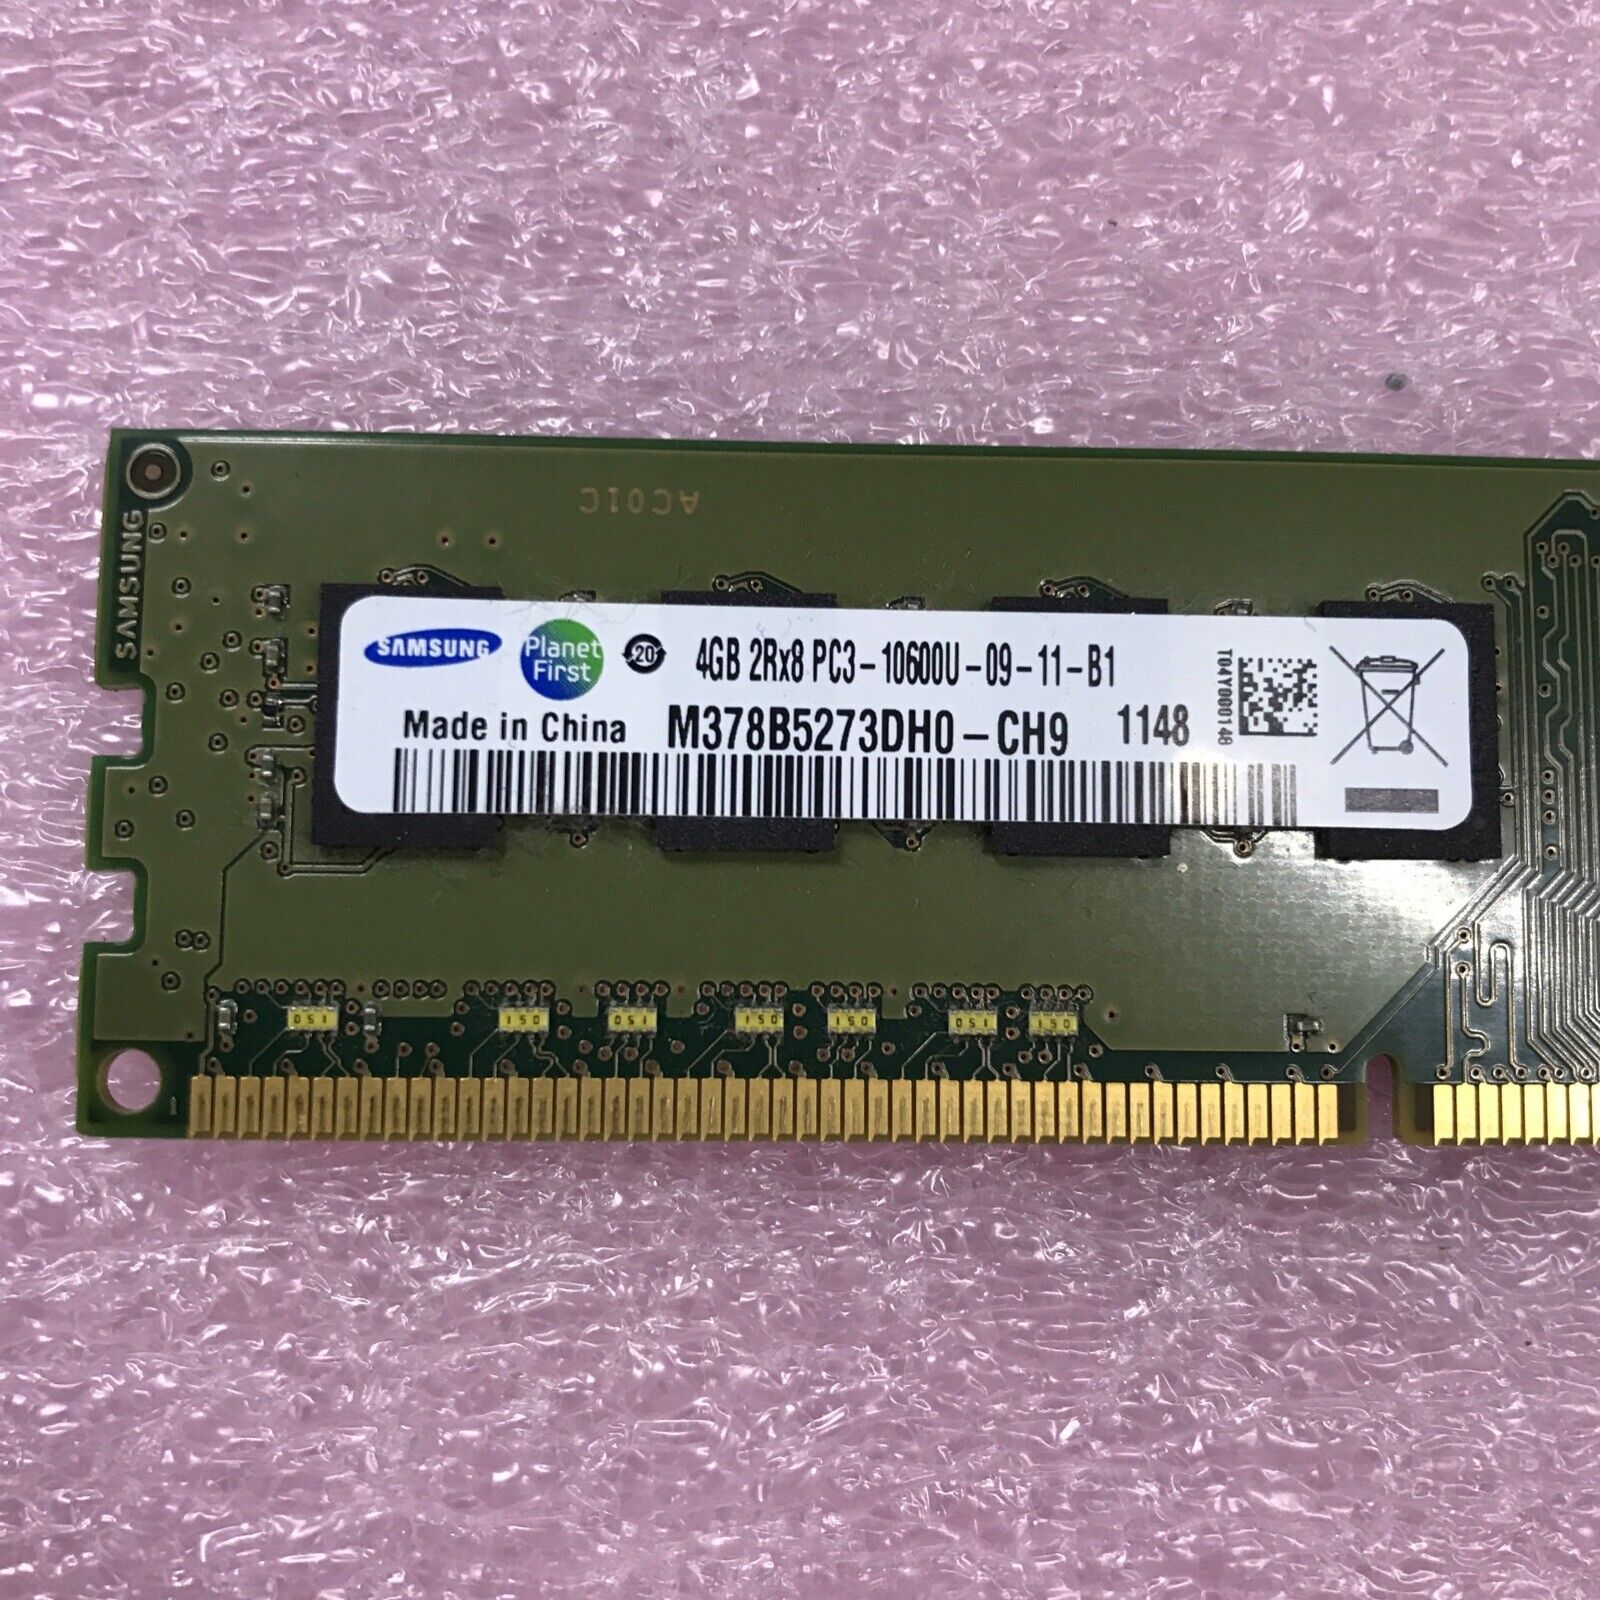 Samsung 8GB Kit 2x4Gb 2Rx8 PD3-10600U-09-11-B1 Desktop Memory M378B5273DH0